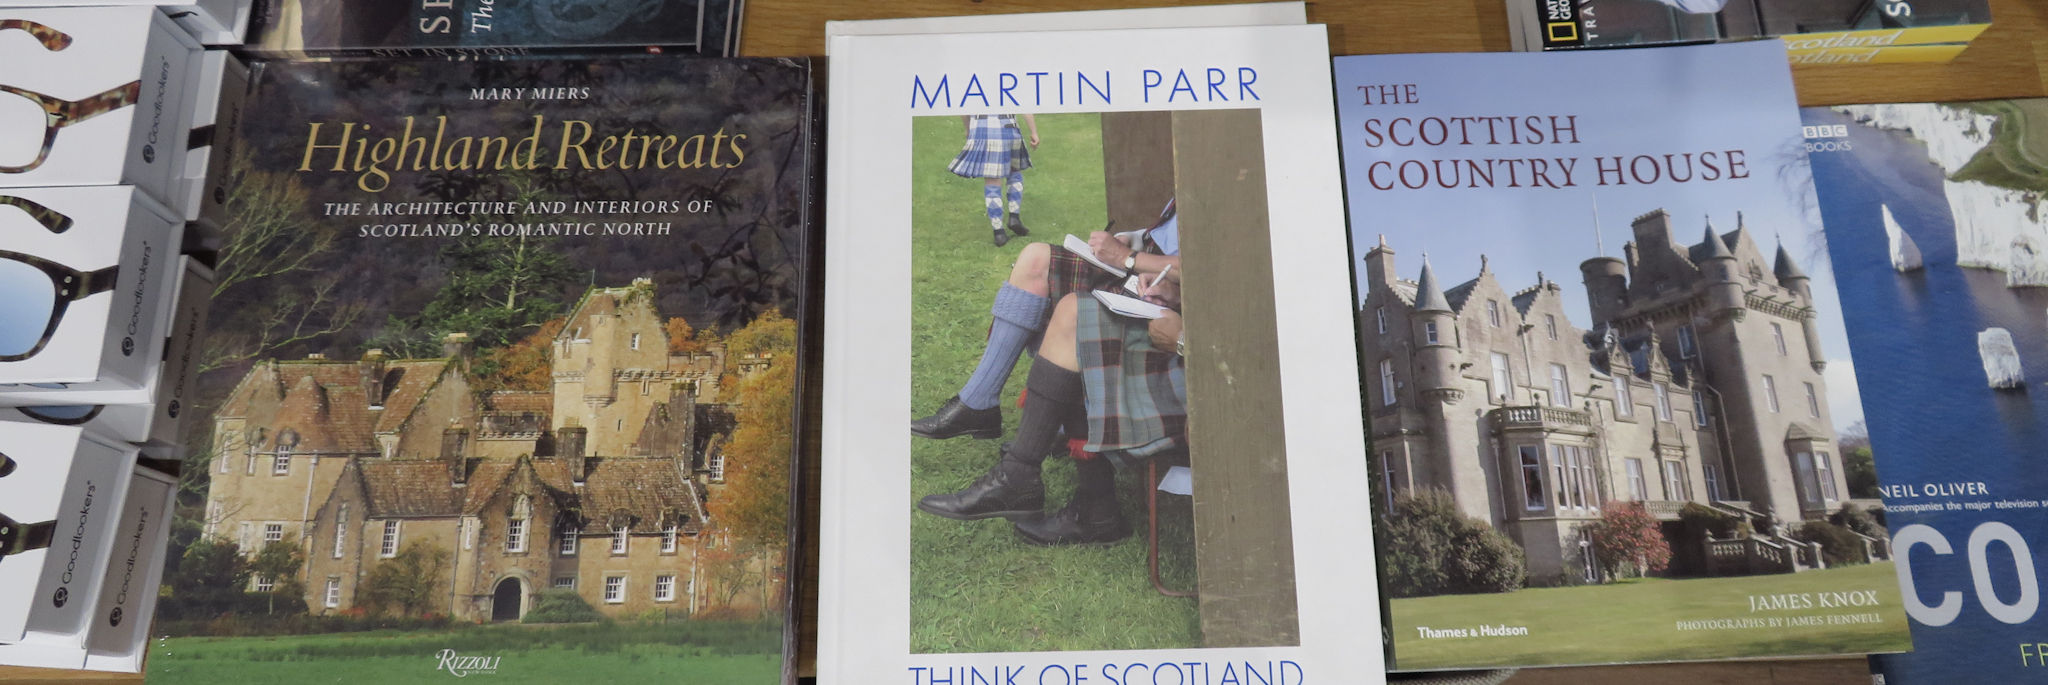 Scottish books and book festivals in Scotland